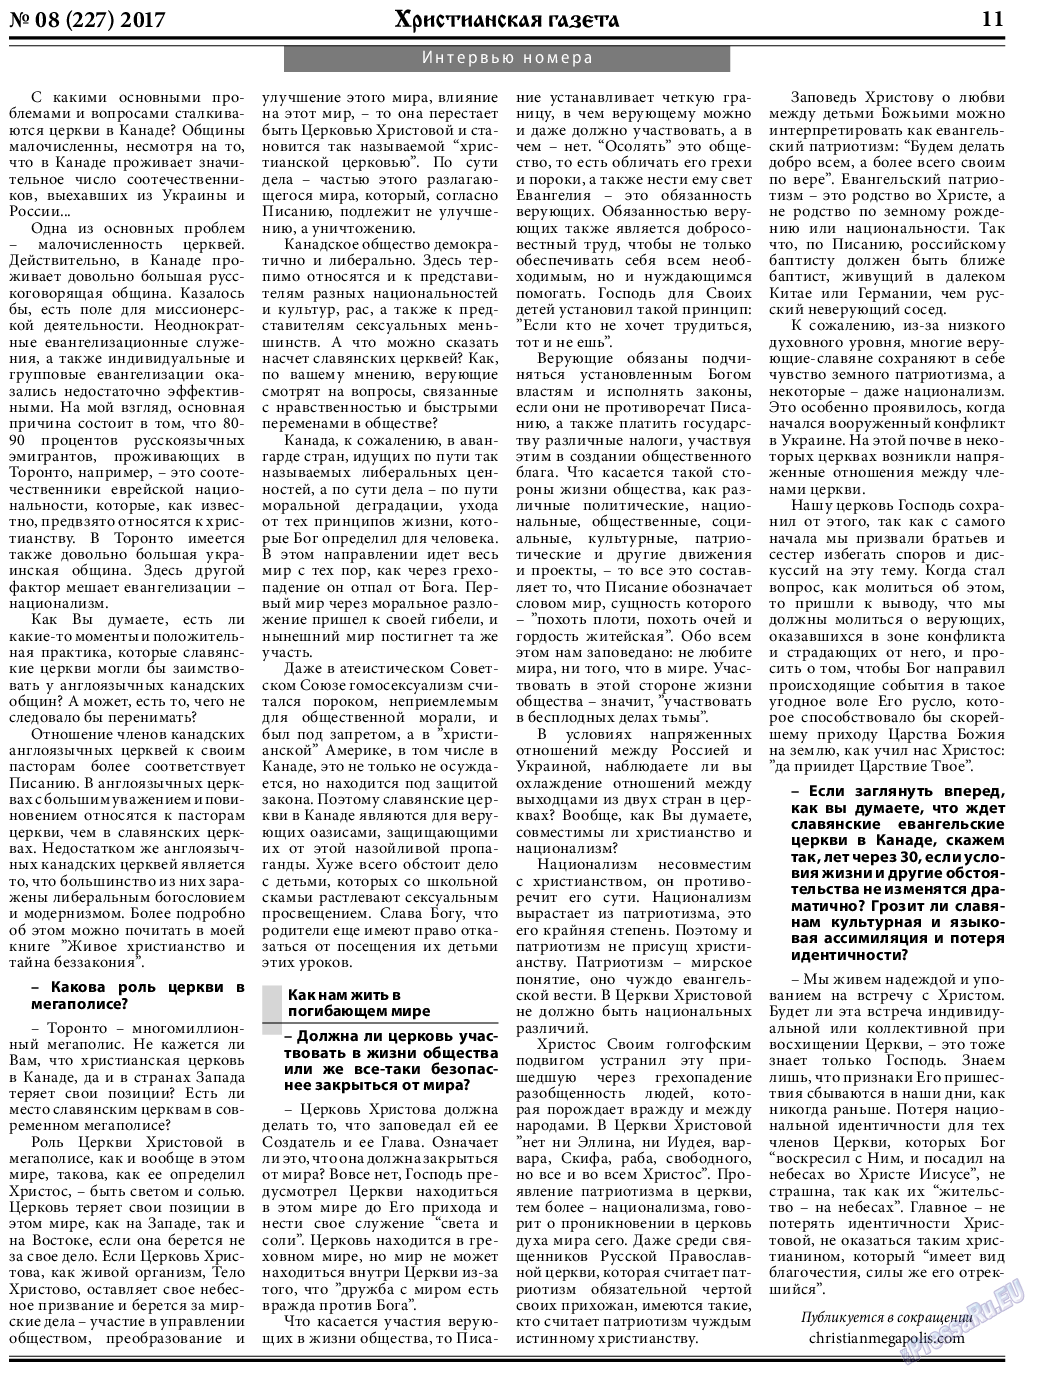 Христианская газета, газета. 2017 №9 стр.11